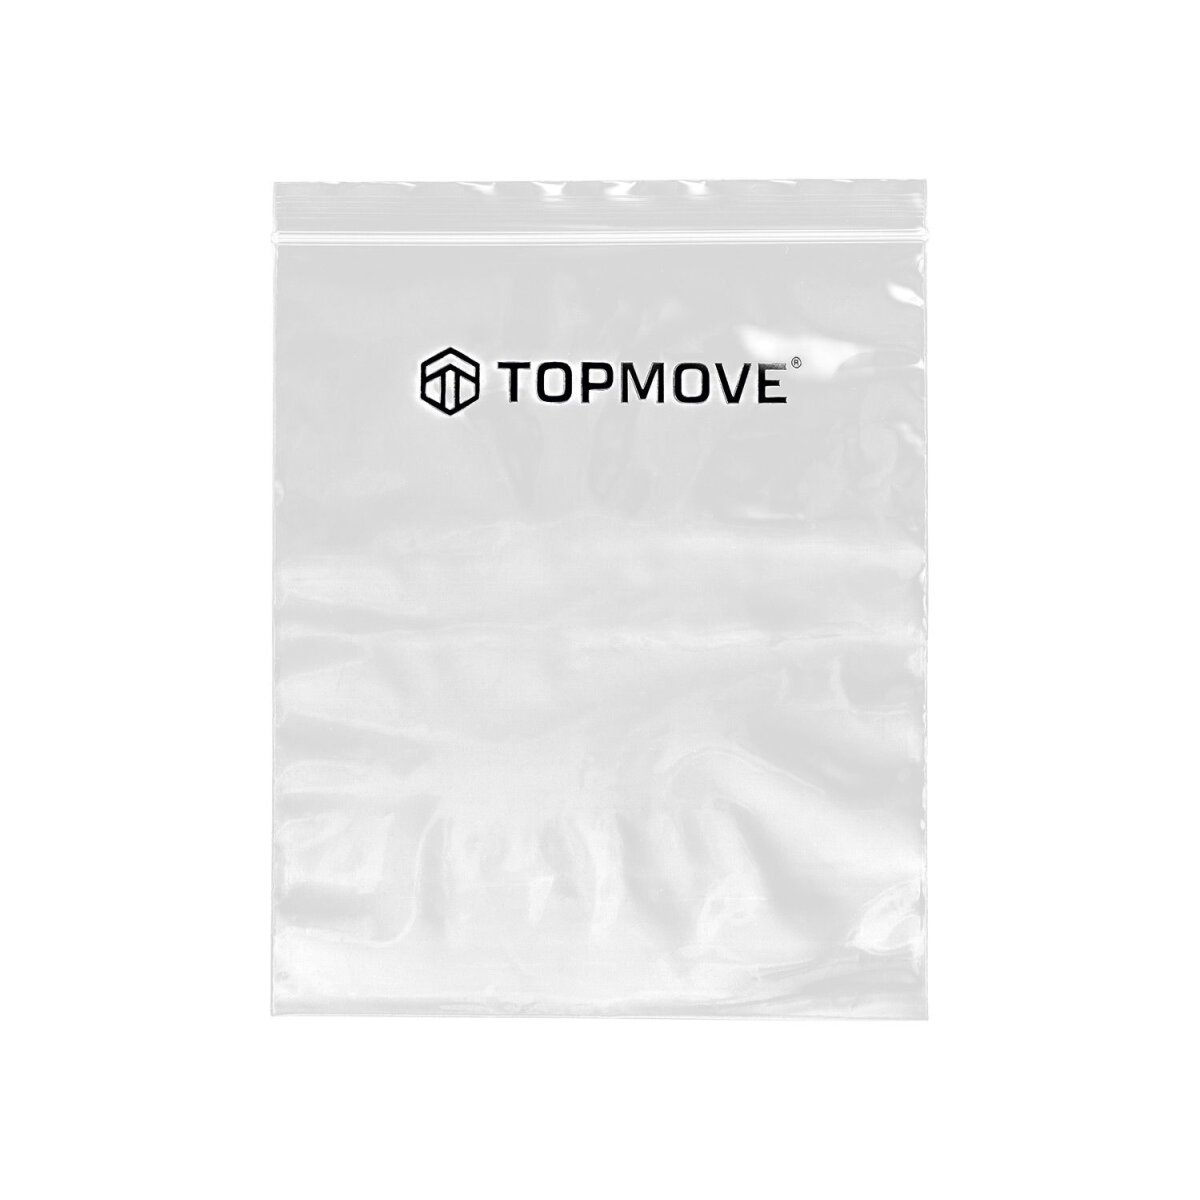 TOPMOVE® 32 gut, l Aluminium B-Ware 68,99 € Trolley-Reisekoffer, -